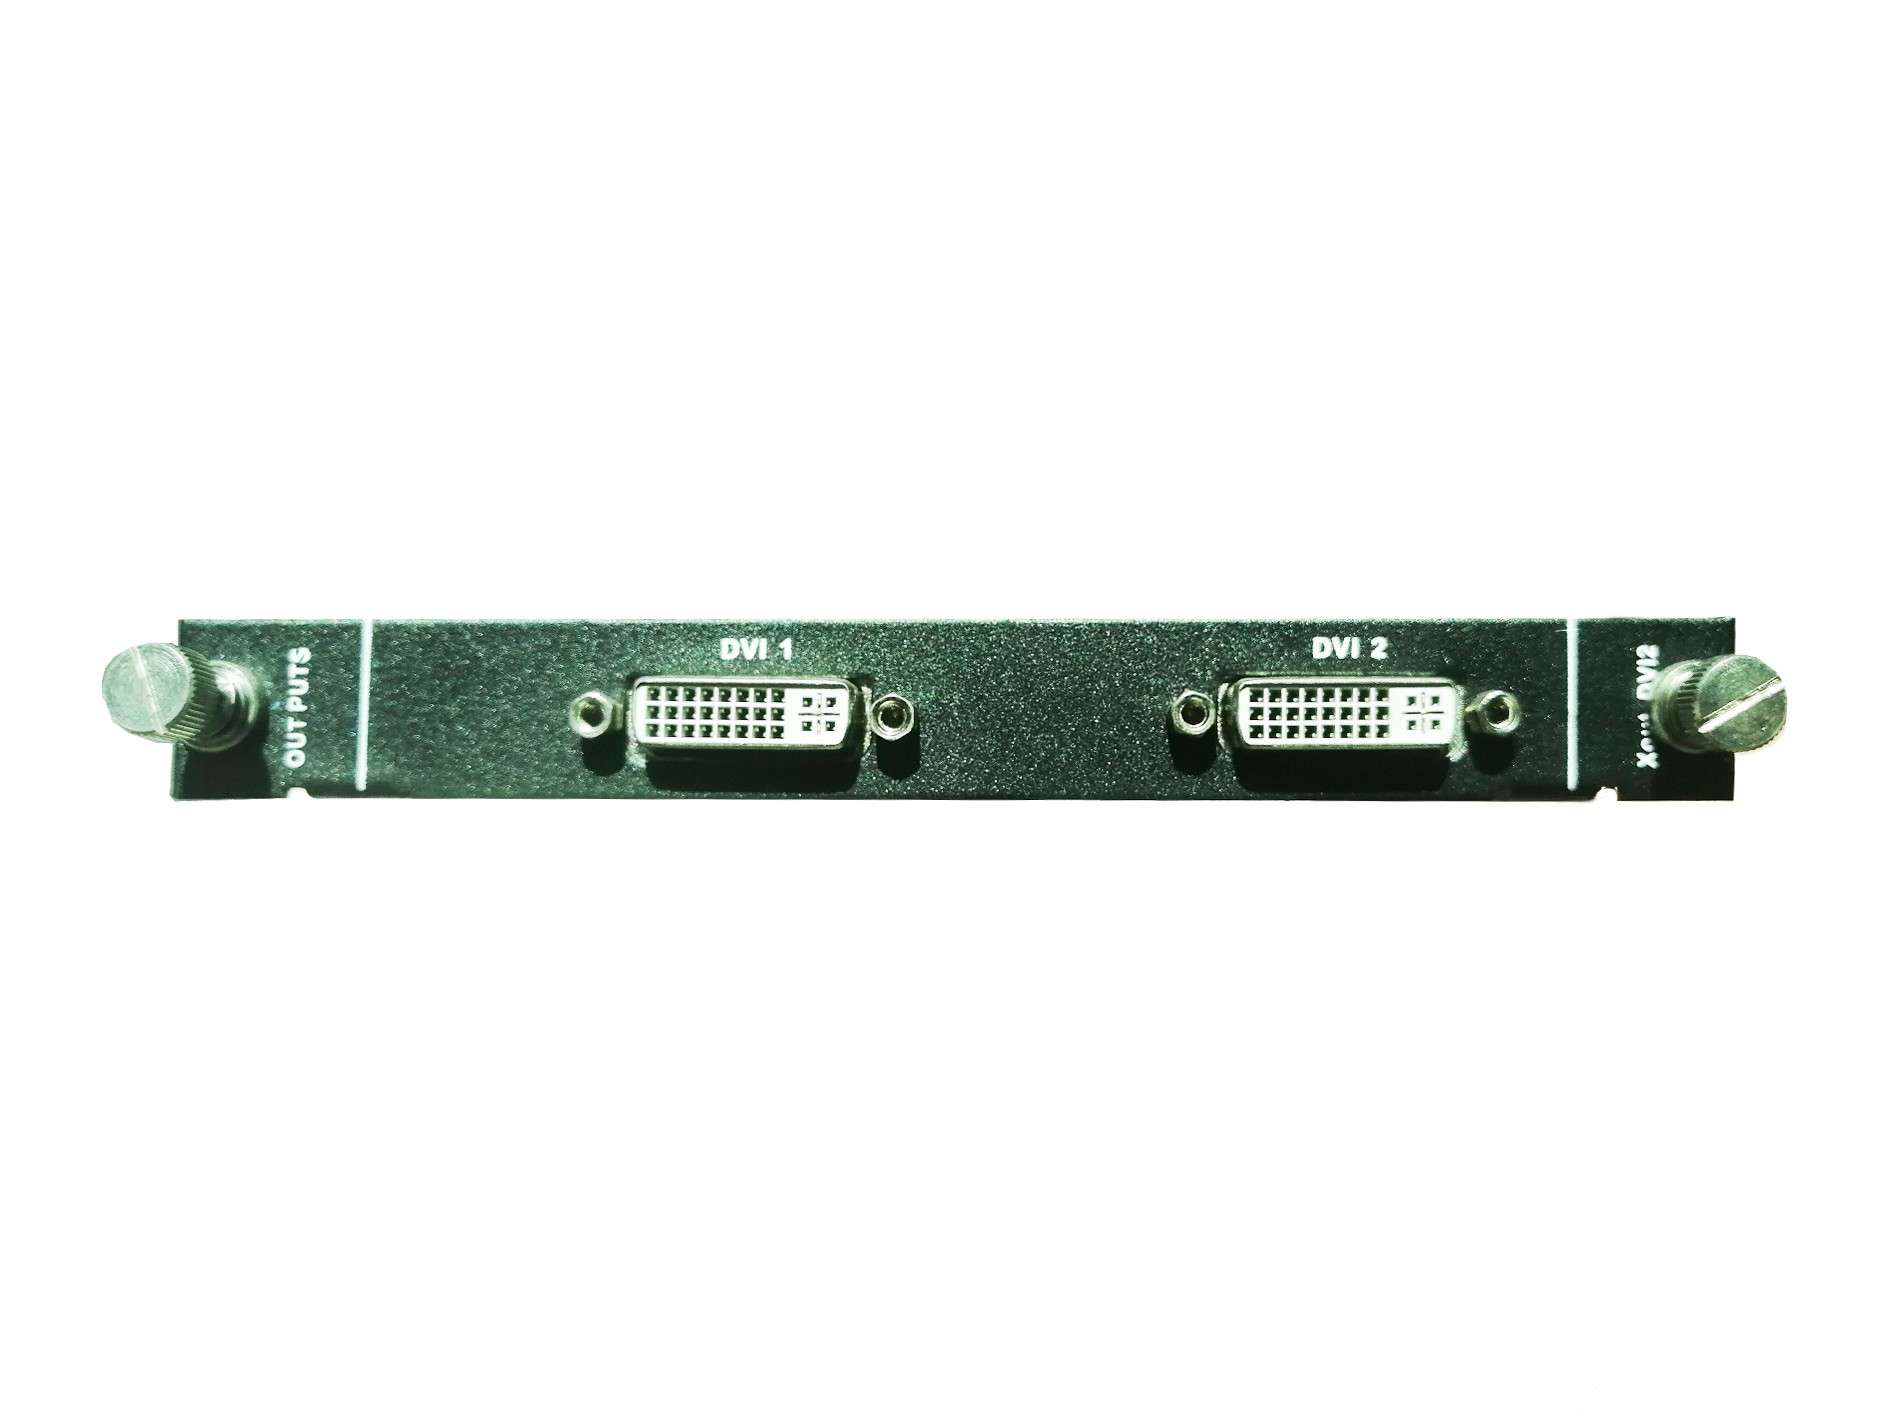 2 x DVI input boards